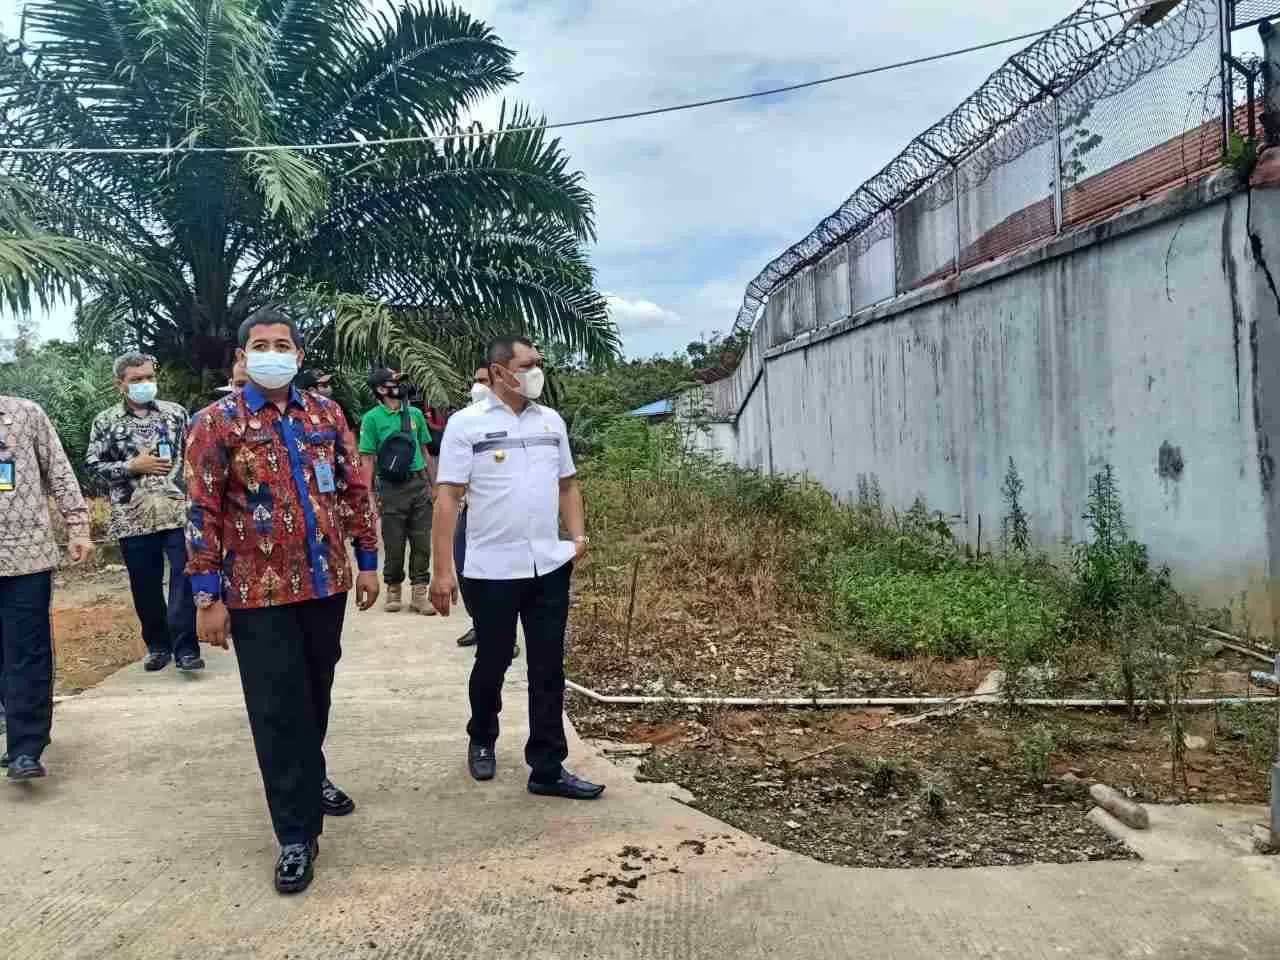 TINJAU FASILITAS: Bupati Paser dr Fahmi Fadli berkunjung ke Rutan Kelas IIB Tanah Grogot melihat fasilitas pembinaan yang masih minim untuk warga Paser, Jum'at (23/4).